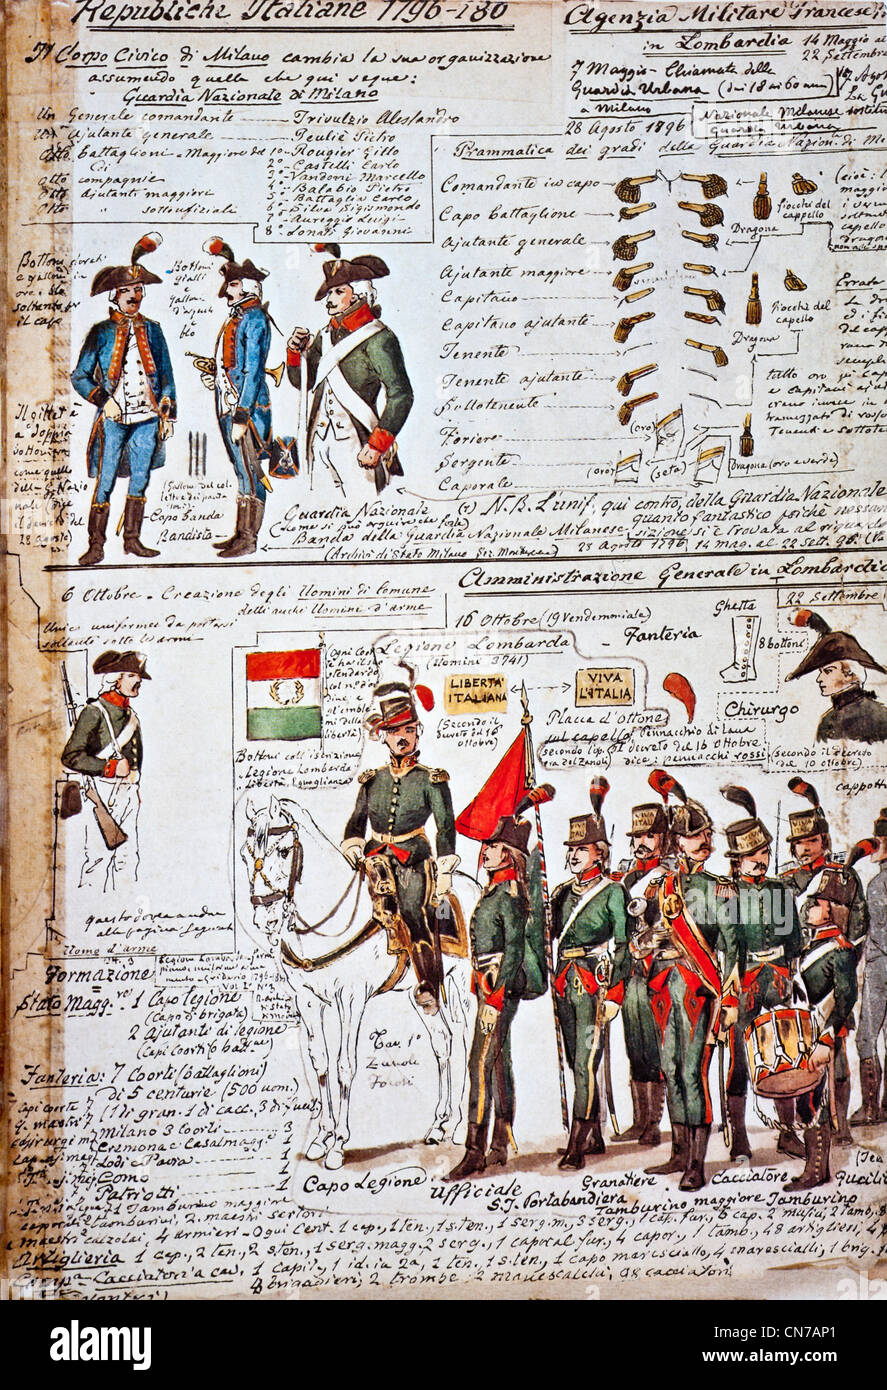 Alten Figurini Vertreter der italienischen Republik. Tabellen von Quinto Cenni und die Uniformen der italienischen Republik 1796/1800 Stockfoto